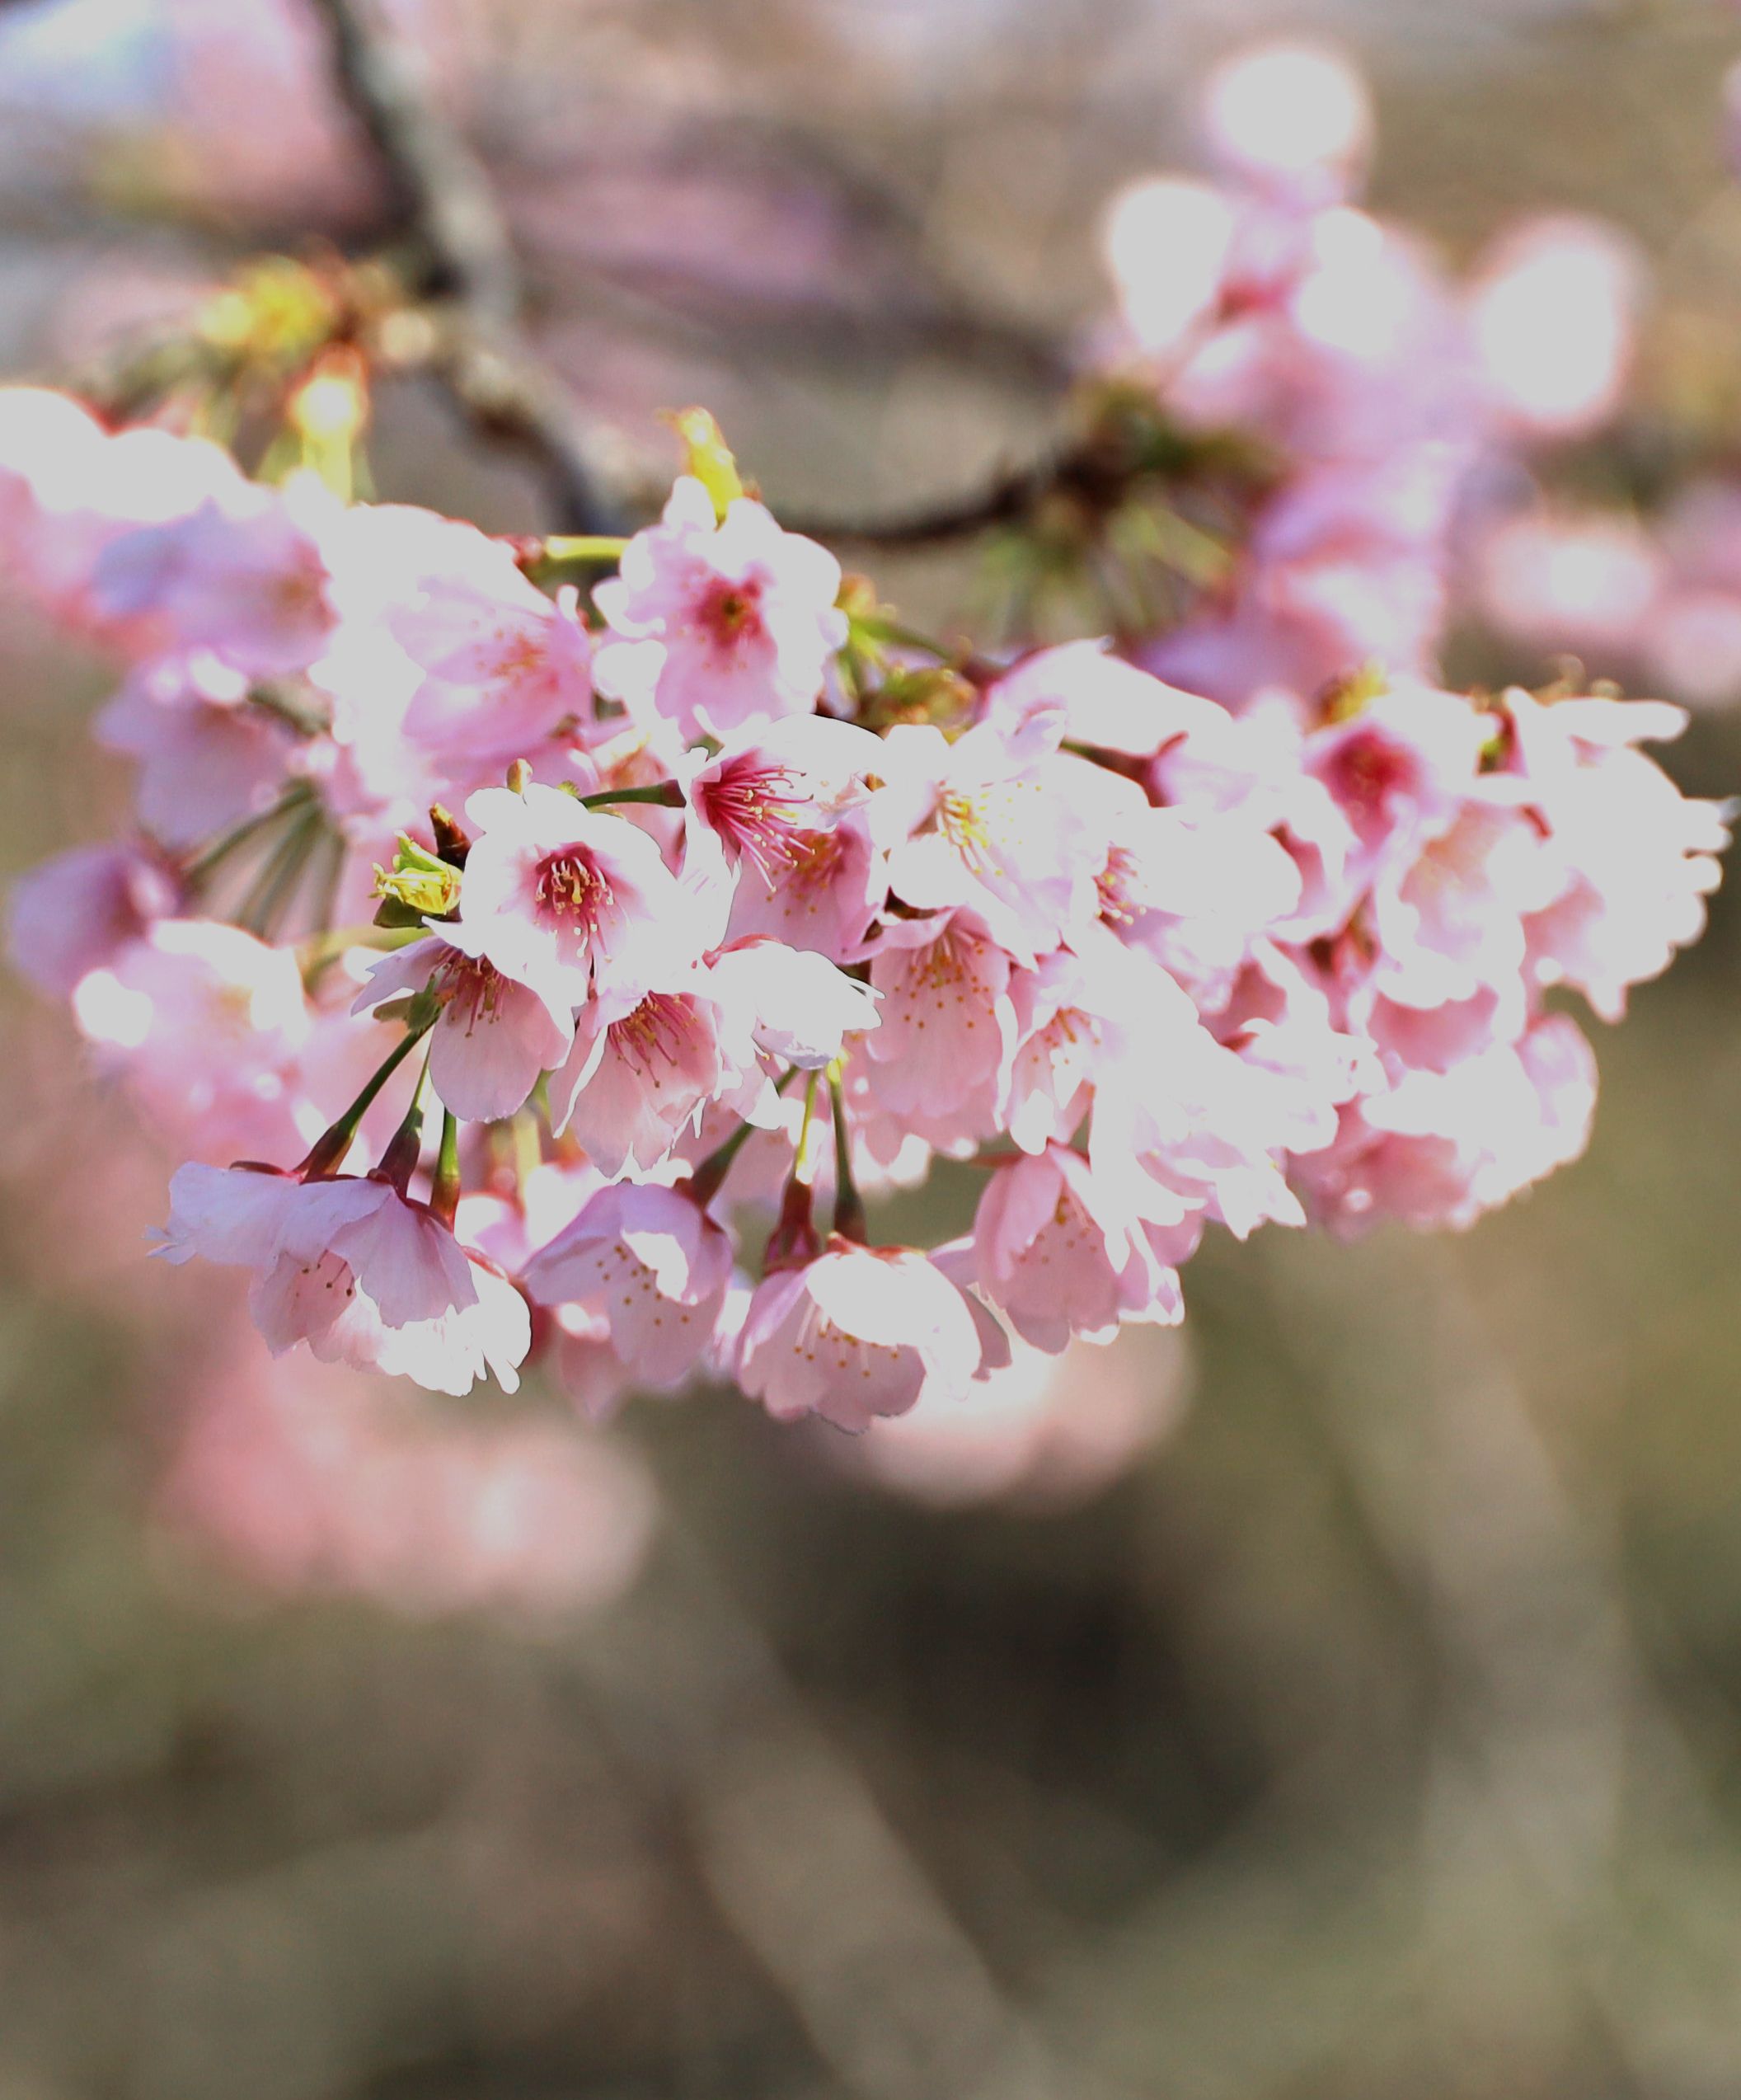 ６５６ 大寒桜が咲きました 不育症 着床障害のブログ ドクター青木の日々感じていること Bloguru